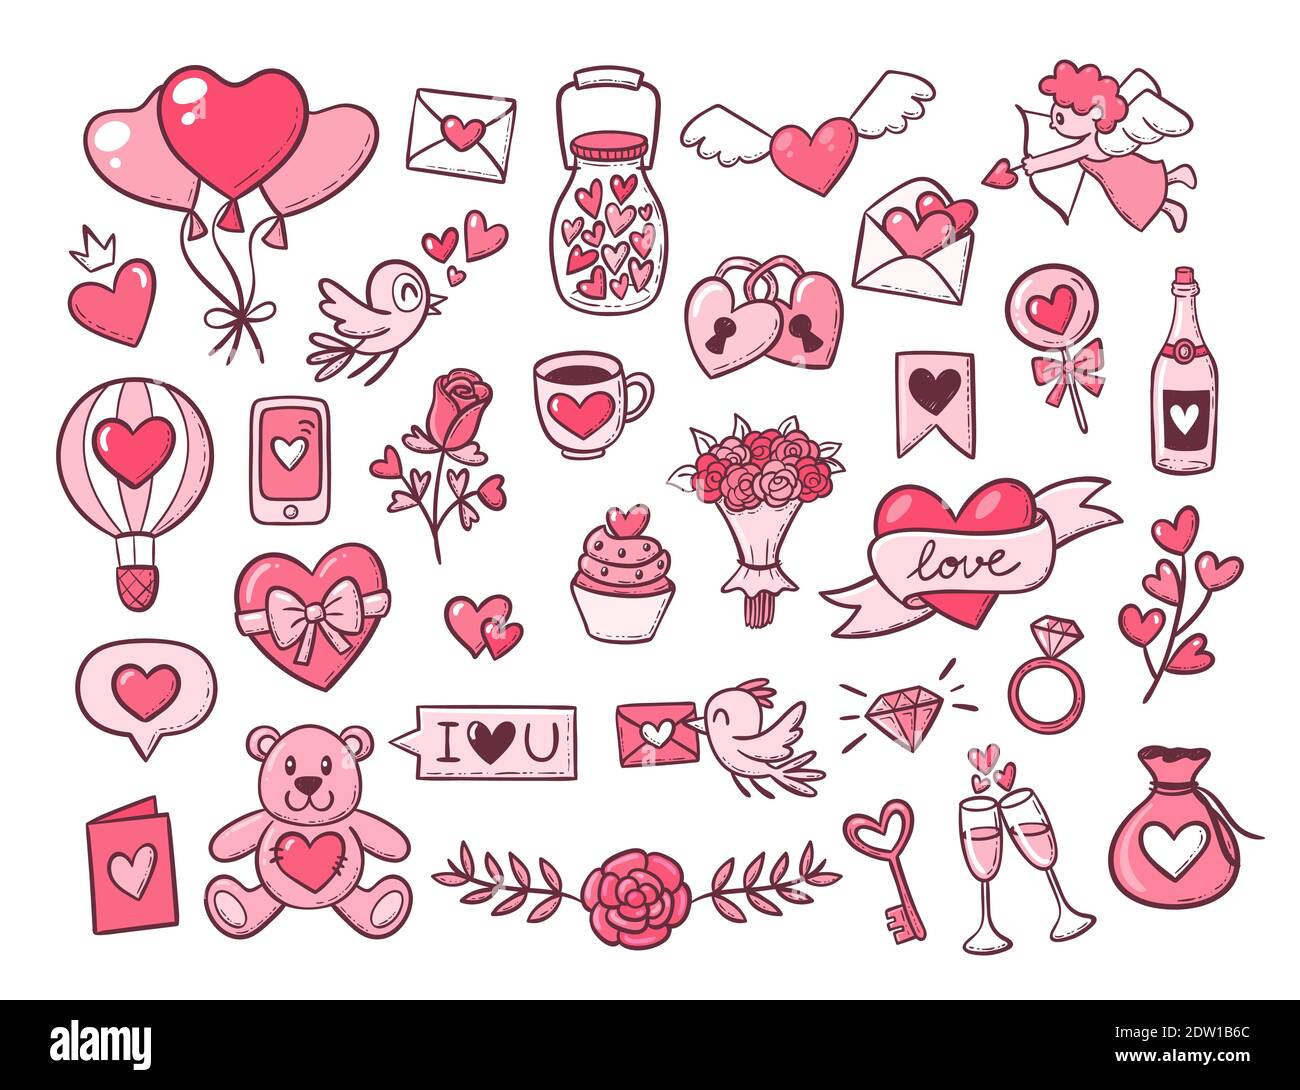 Handgezeichnete Objekte zum Valentinstag. Niedliche und rosa Elemente isoliert auf weiß. EPS 10 Vektorgrafik. Stock Vektor